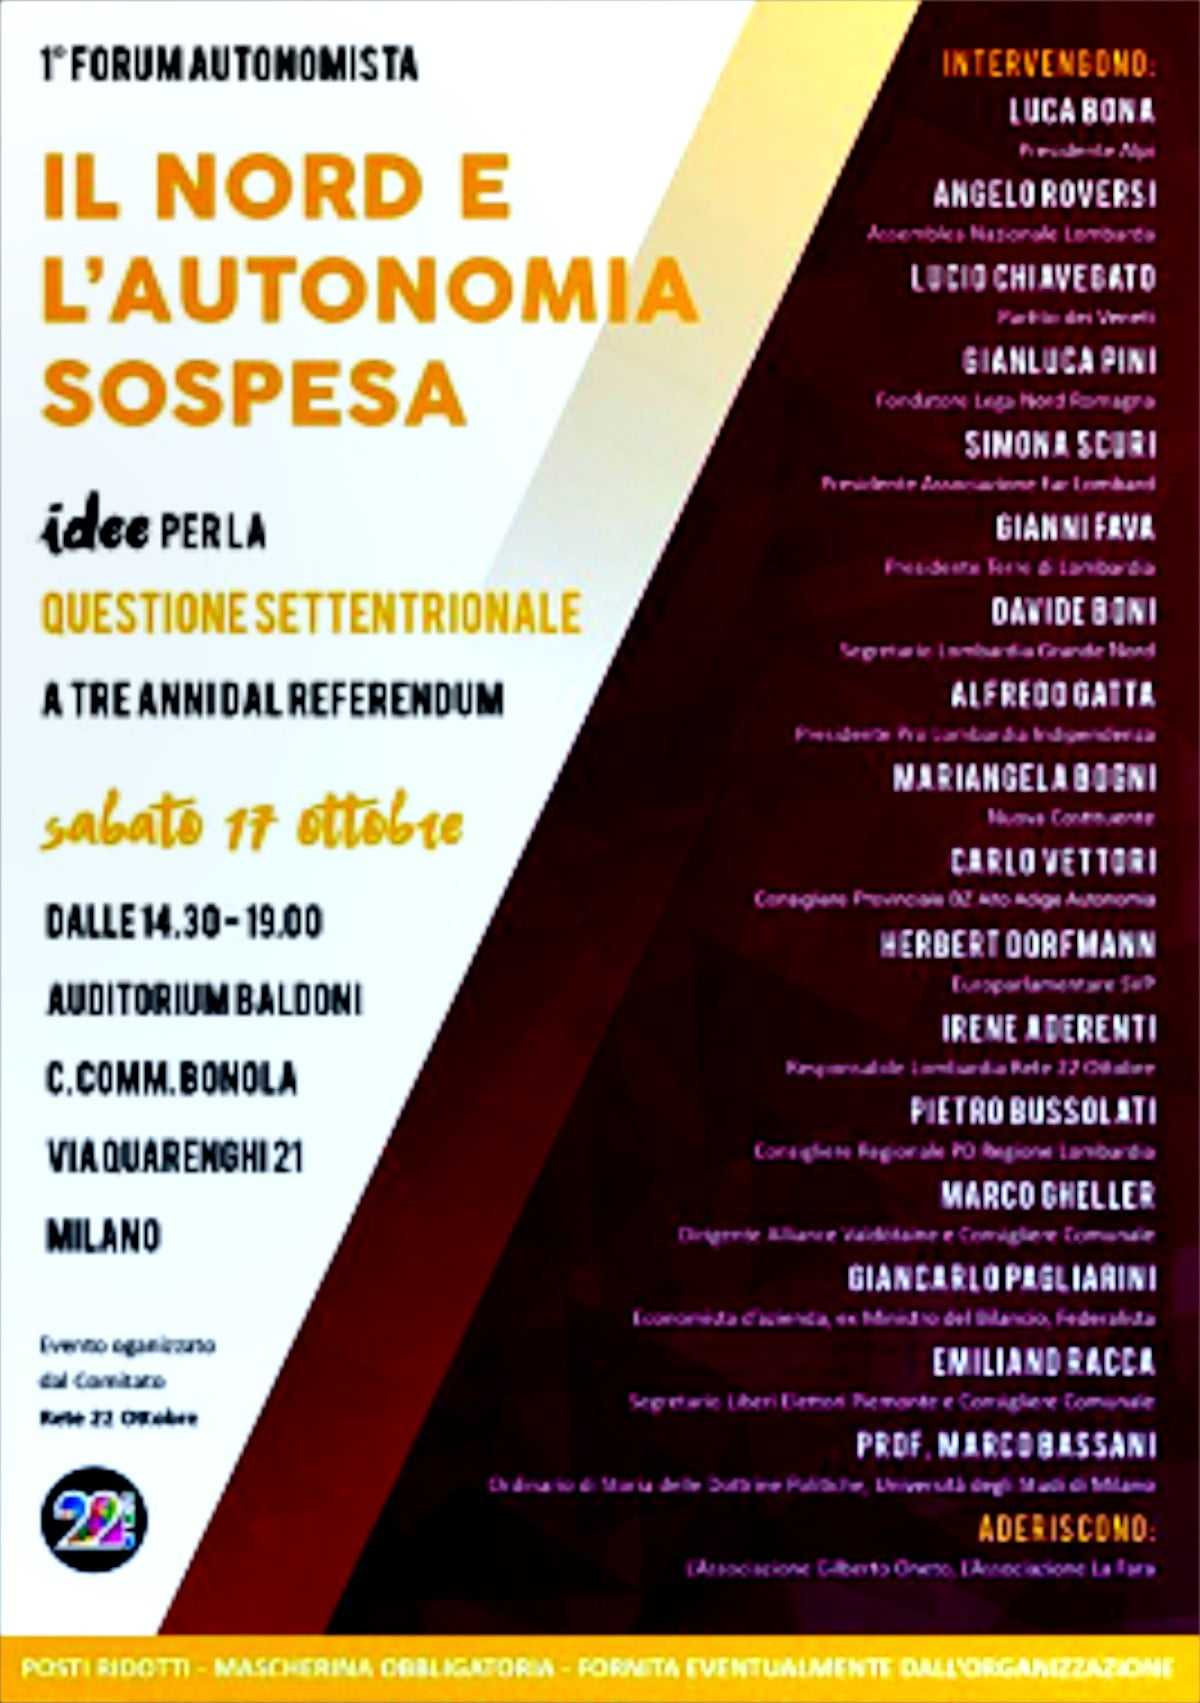 Locandina completa del convegno "Autonomia sospesa" a Milano